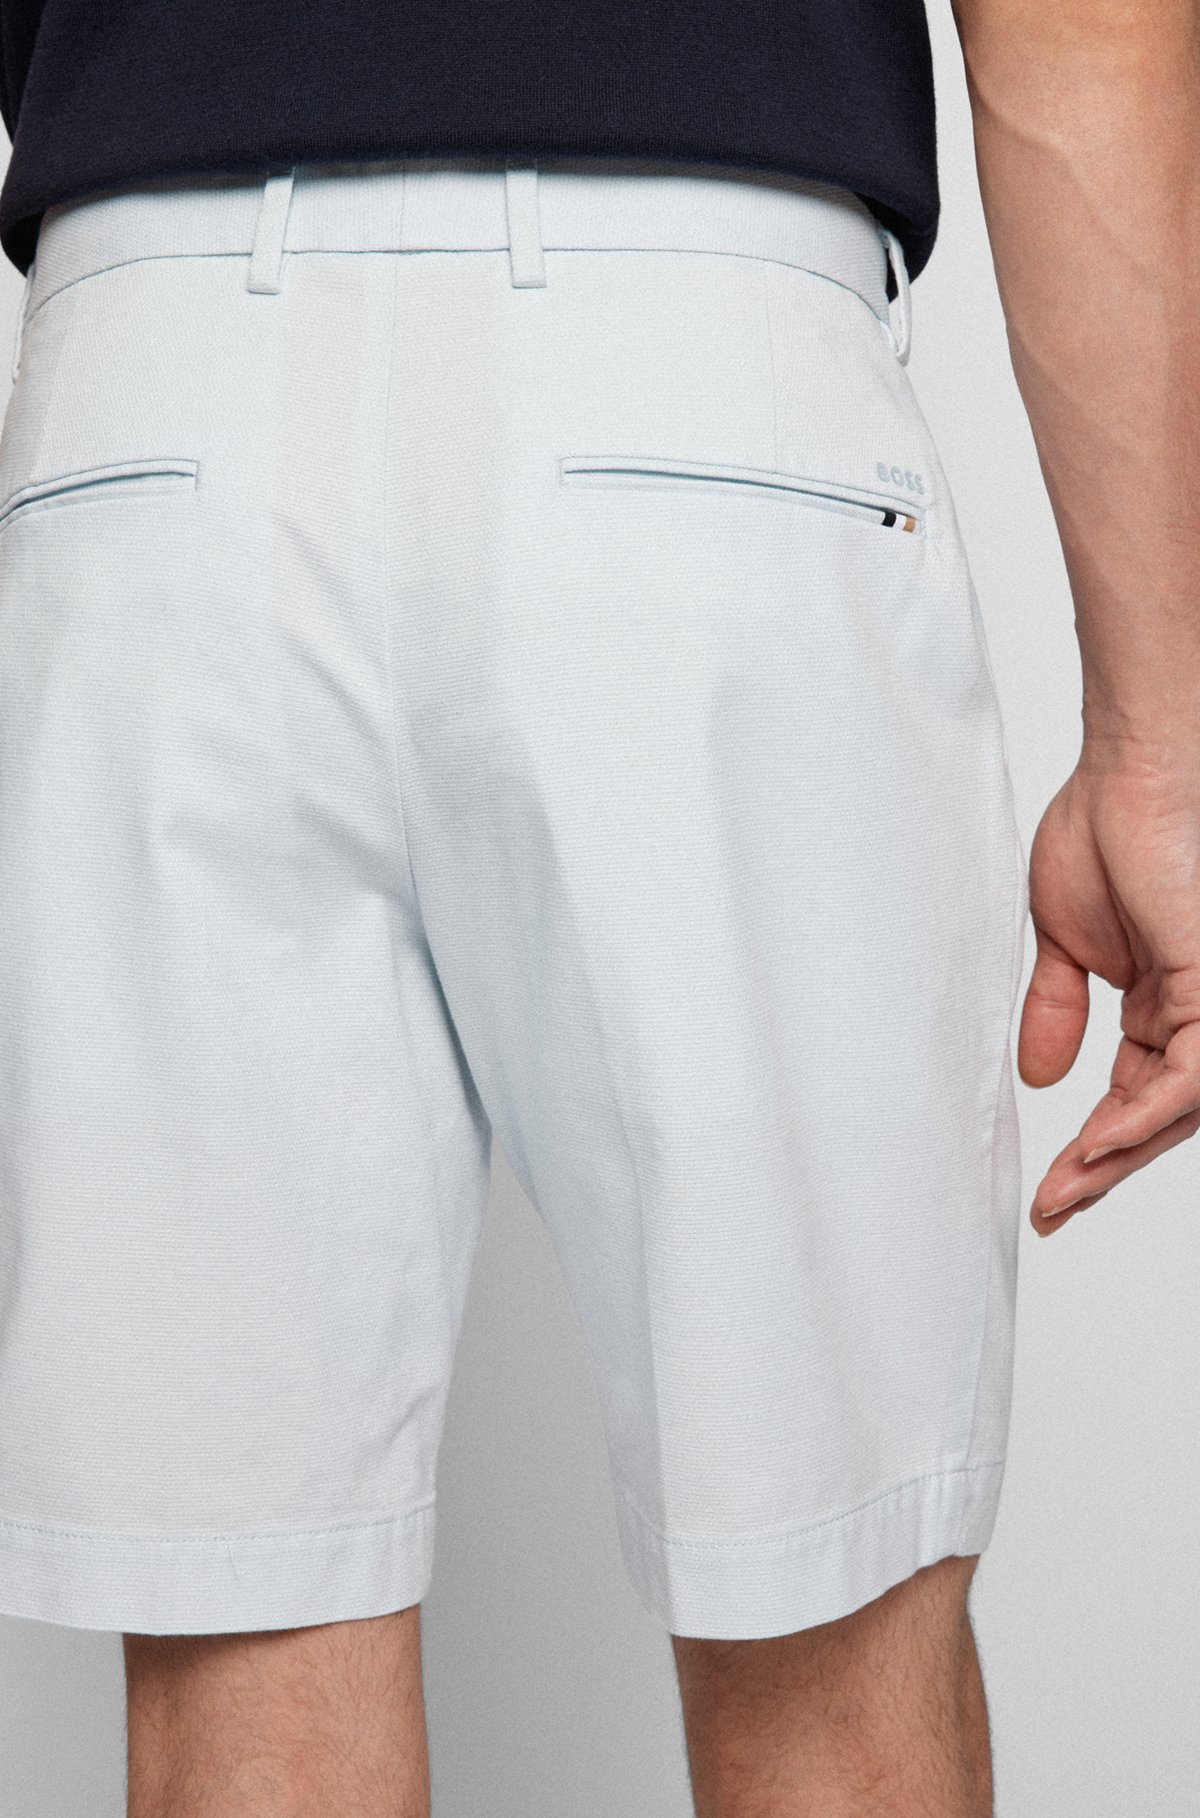 Shorts slim fit de algodón elástico con estructura, Cal